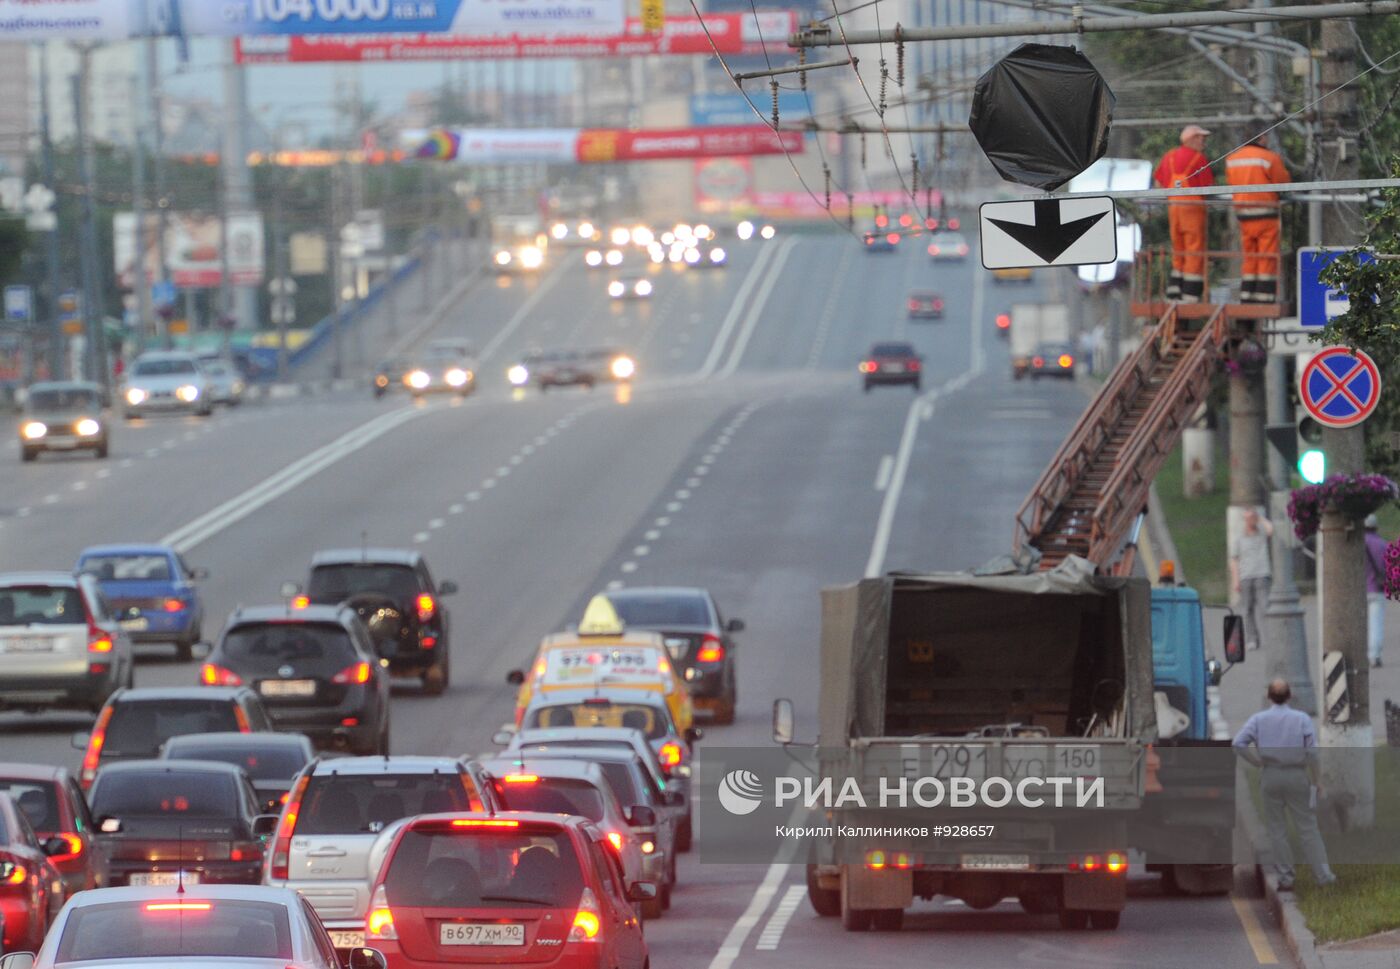 Установка знаков полосы общественного транспорта в Москве